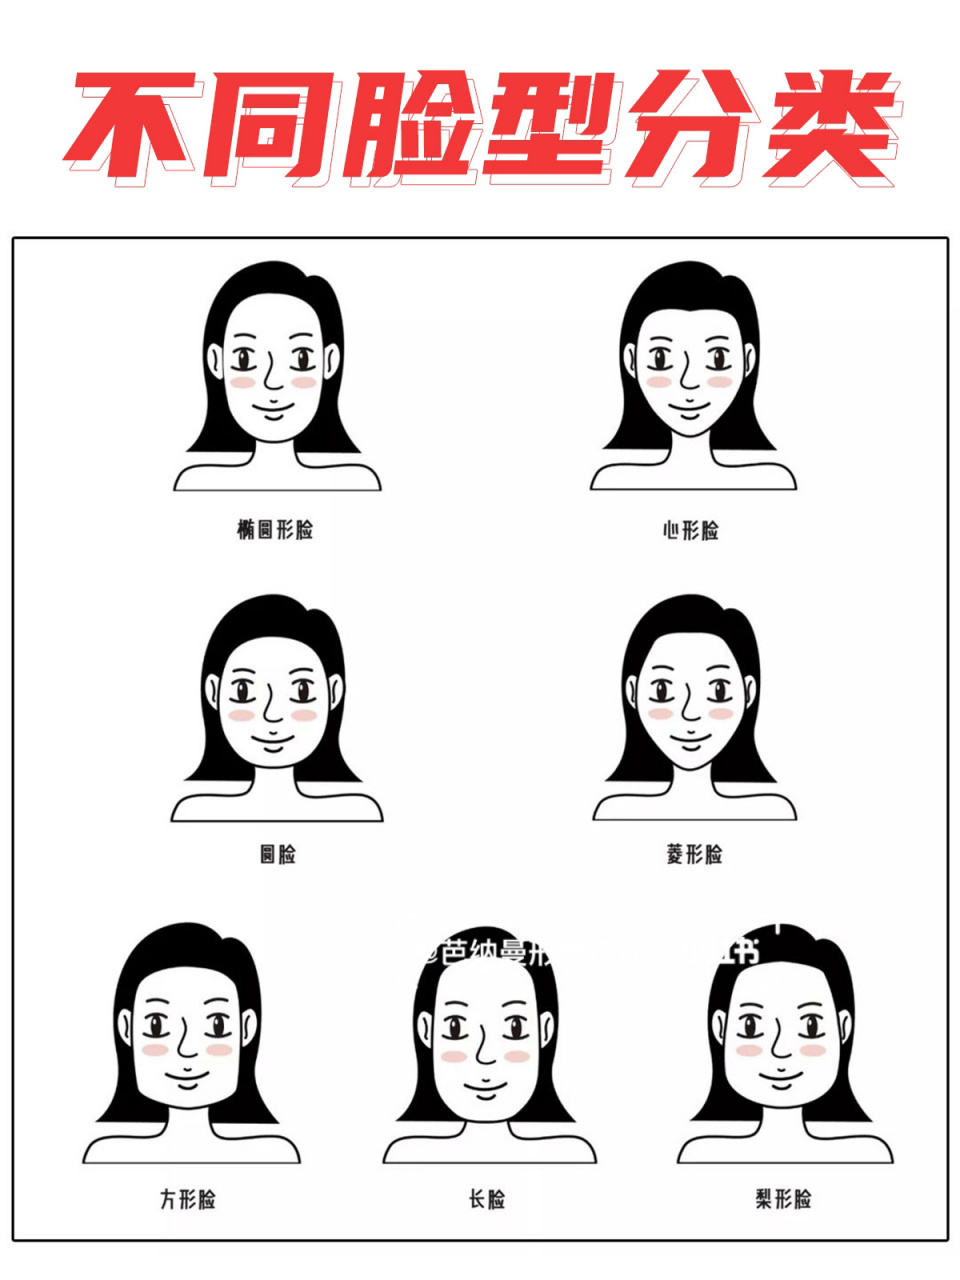 七种脸型图片